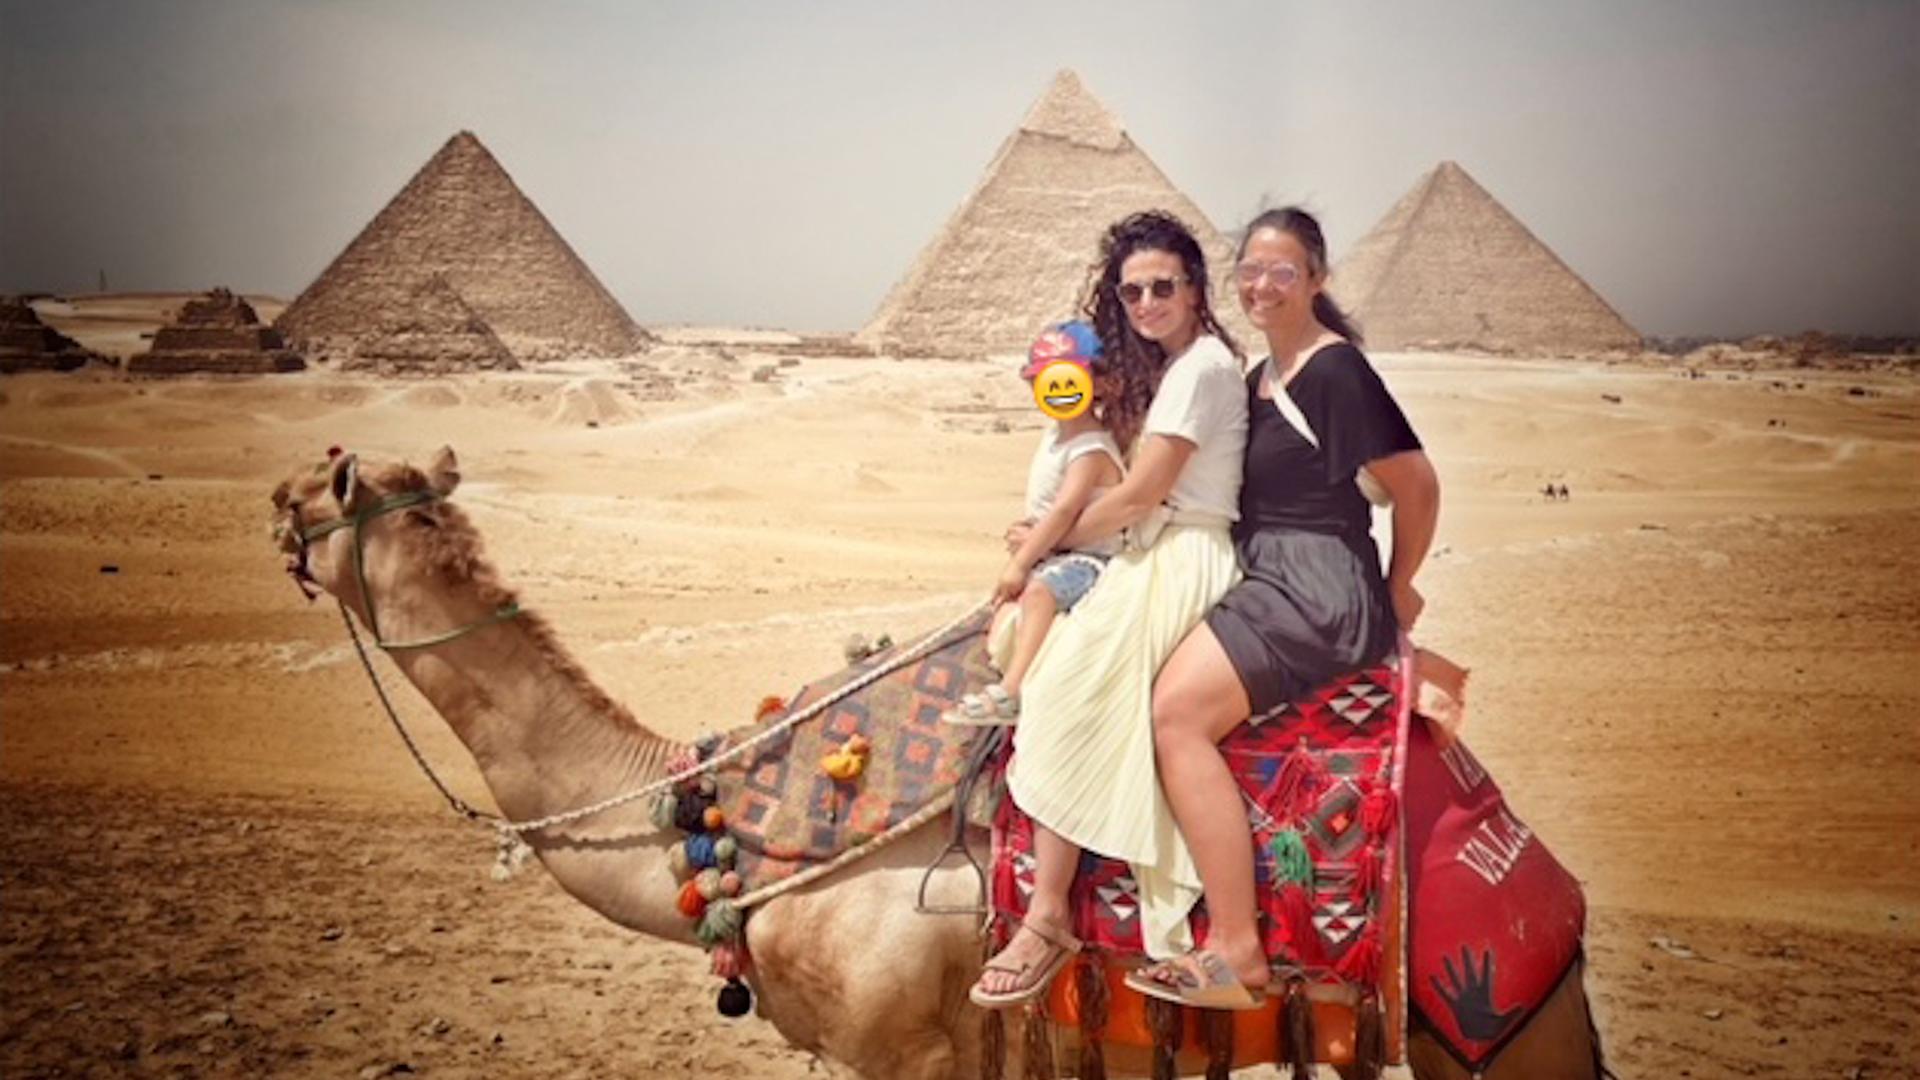 Sonja Koppitz und Marwa Eldessouky sitzen auf einem Dromedar, im Hintergrund sind die Pyramiden zu sehen.